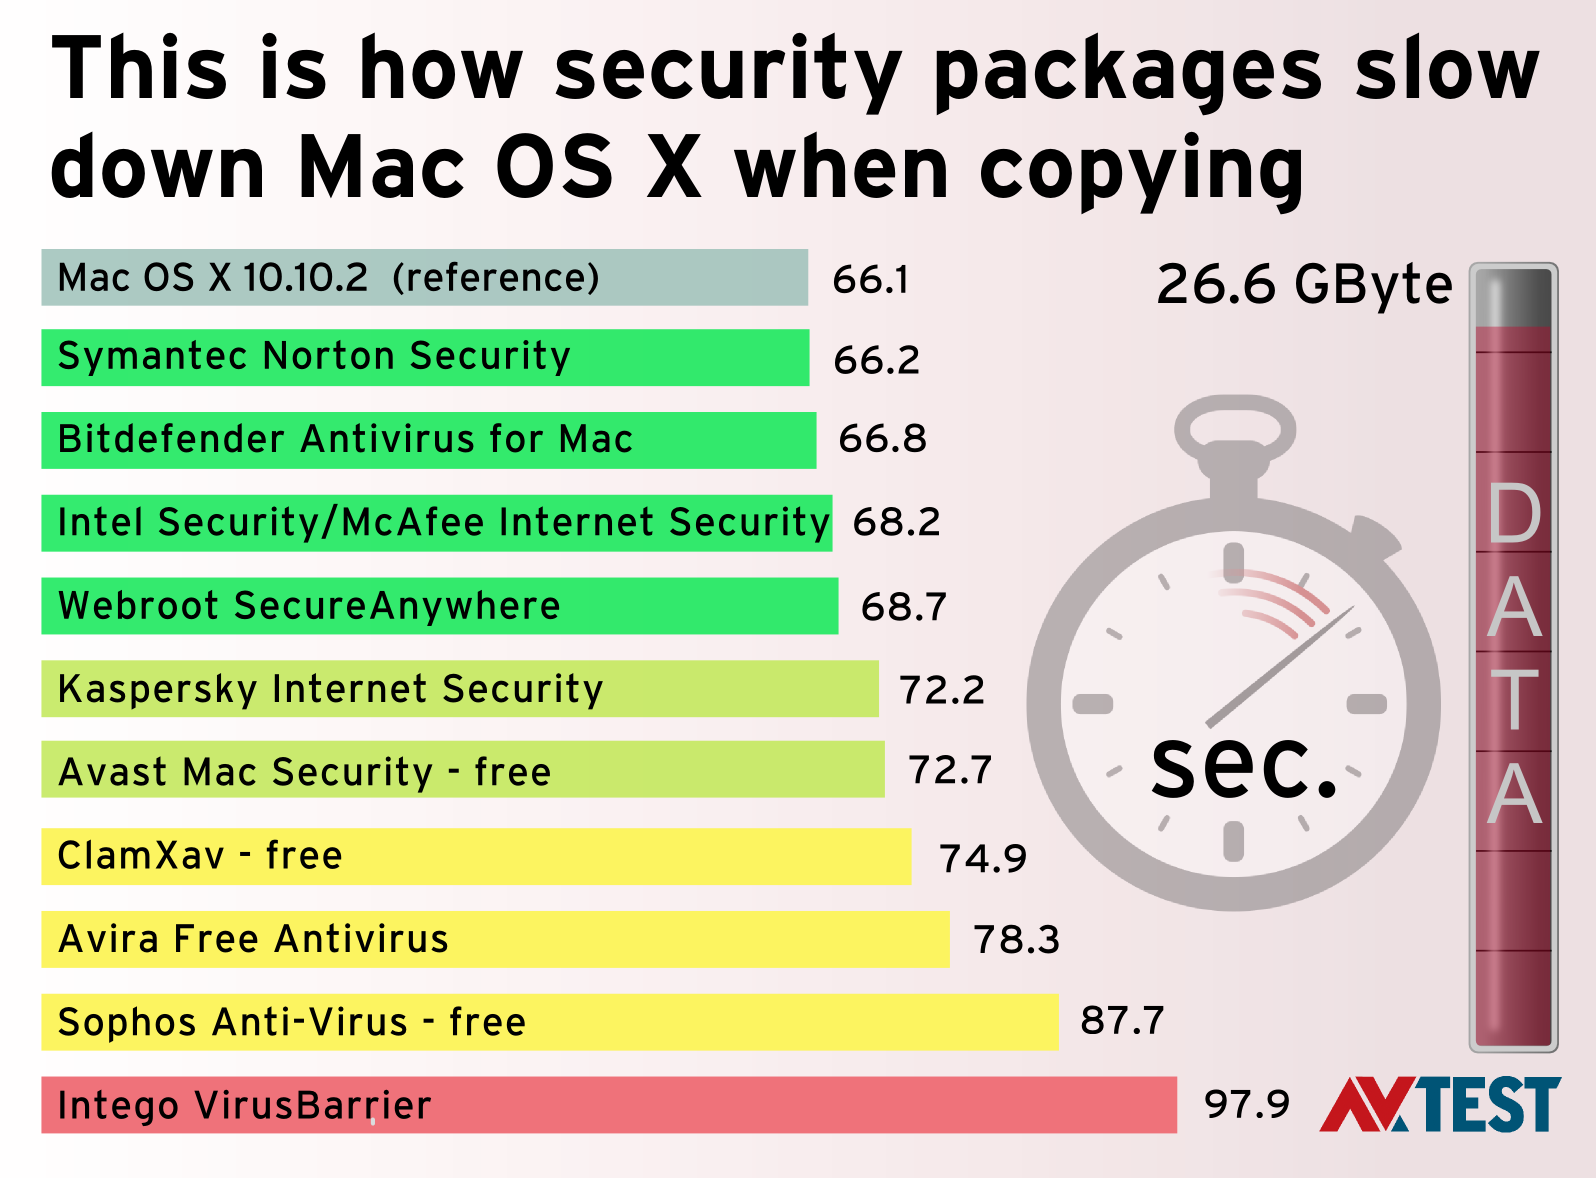 Security package. MCAFEE vs Kaspersky. Av-Test.